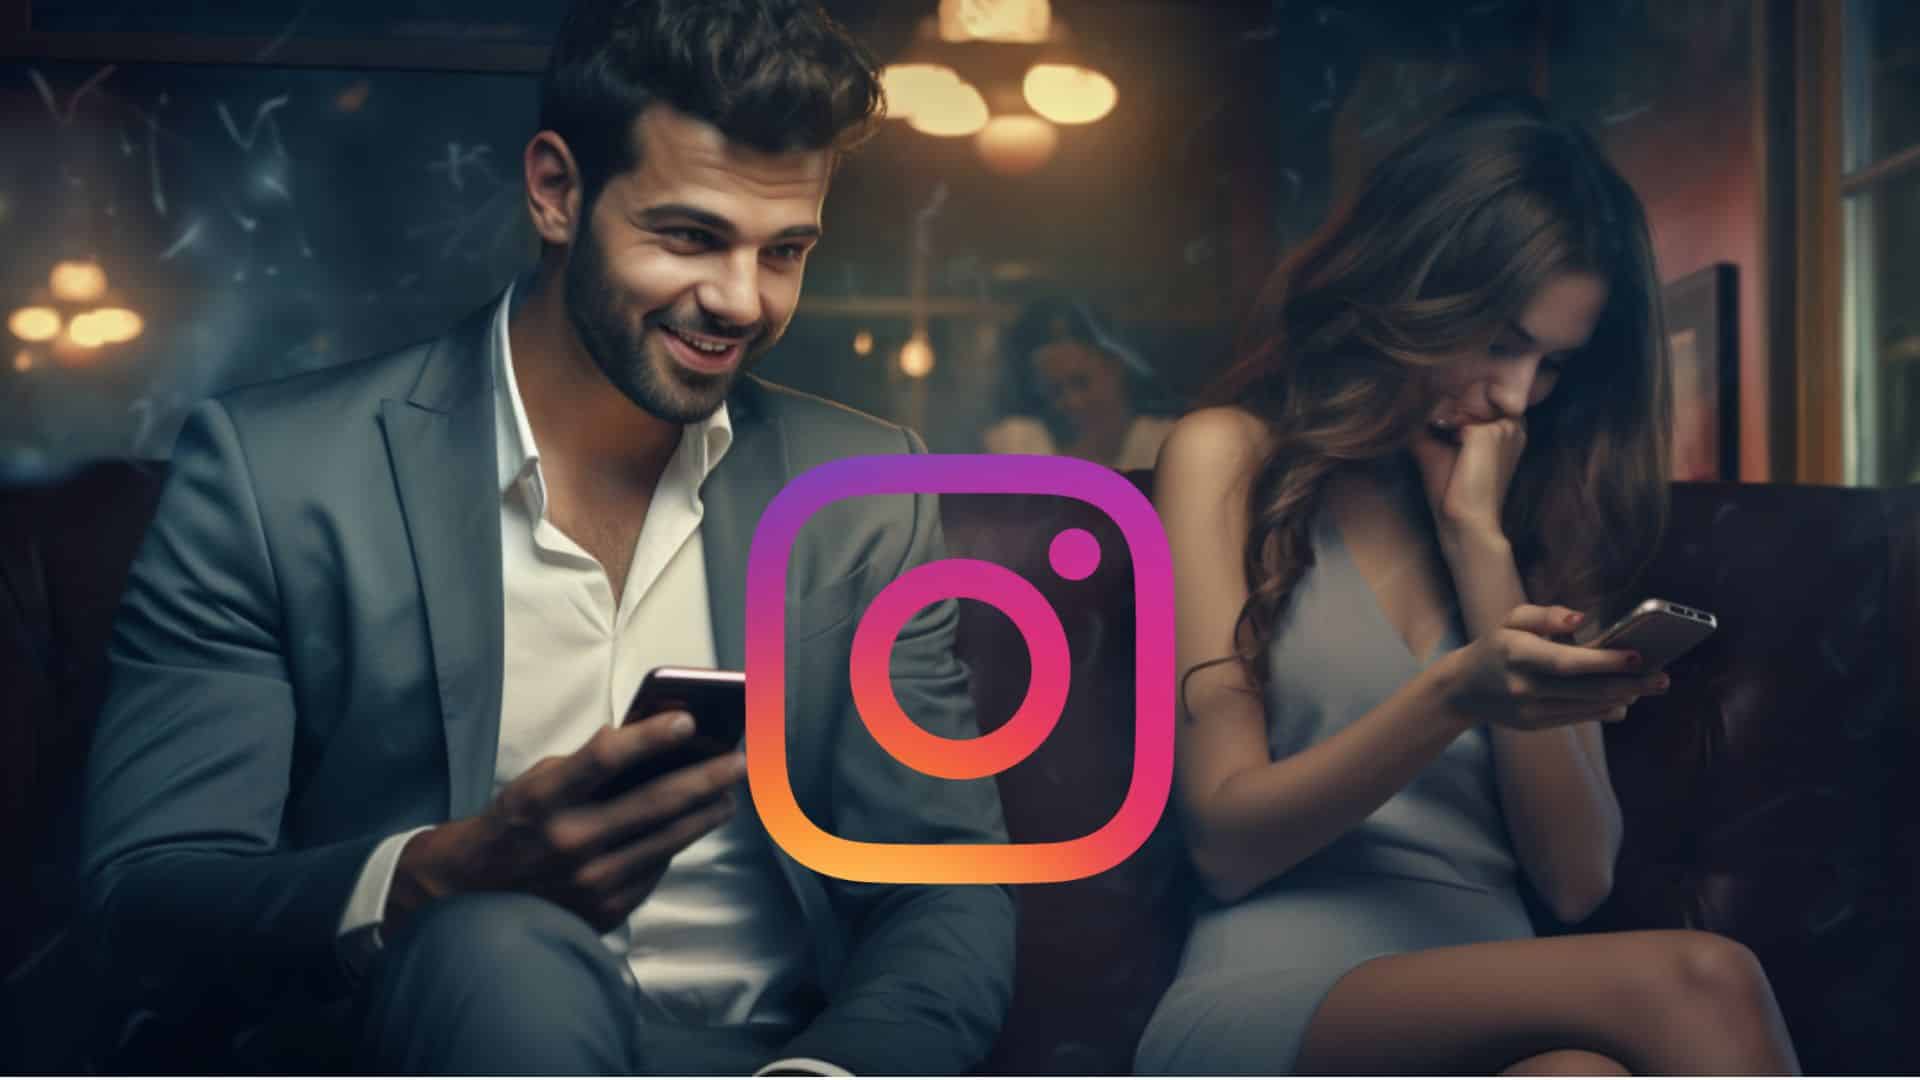 Una mujer sonrie coquetamente mientrass un hombre le envia mensajes por instagram